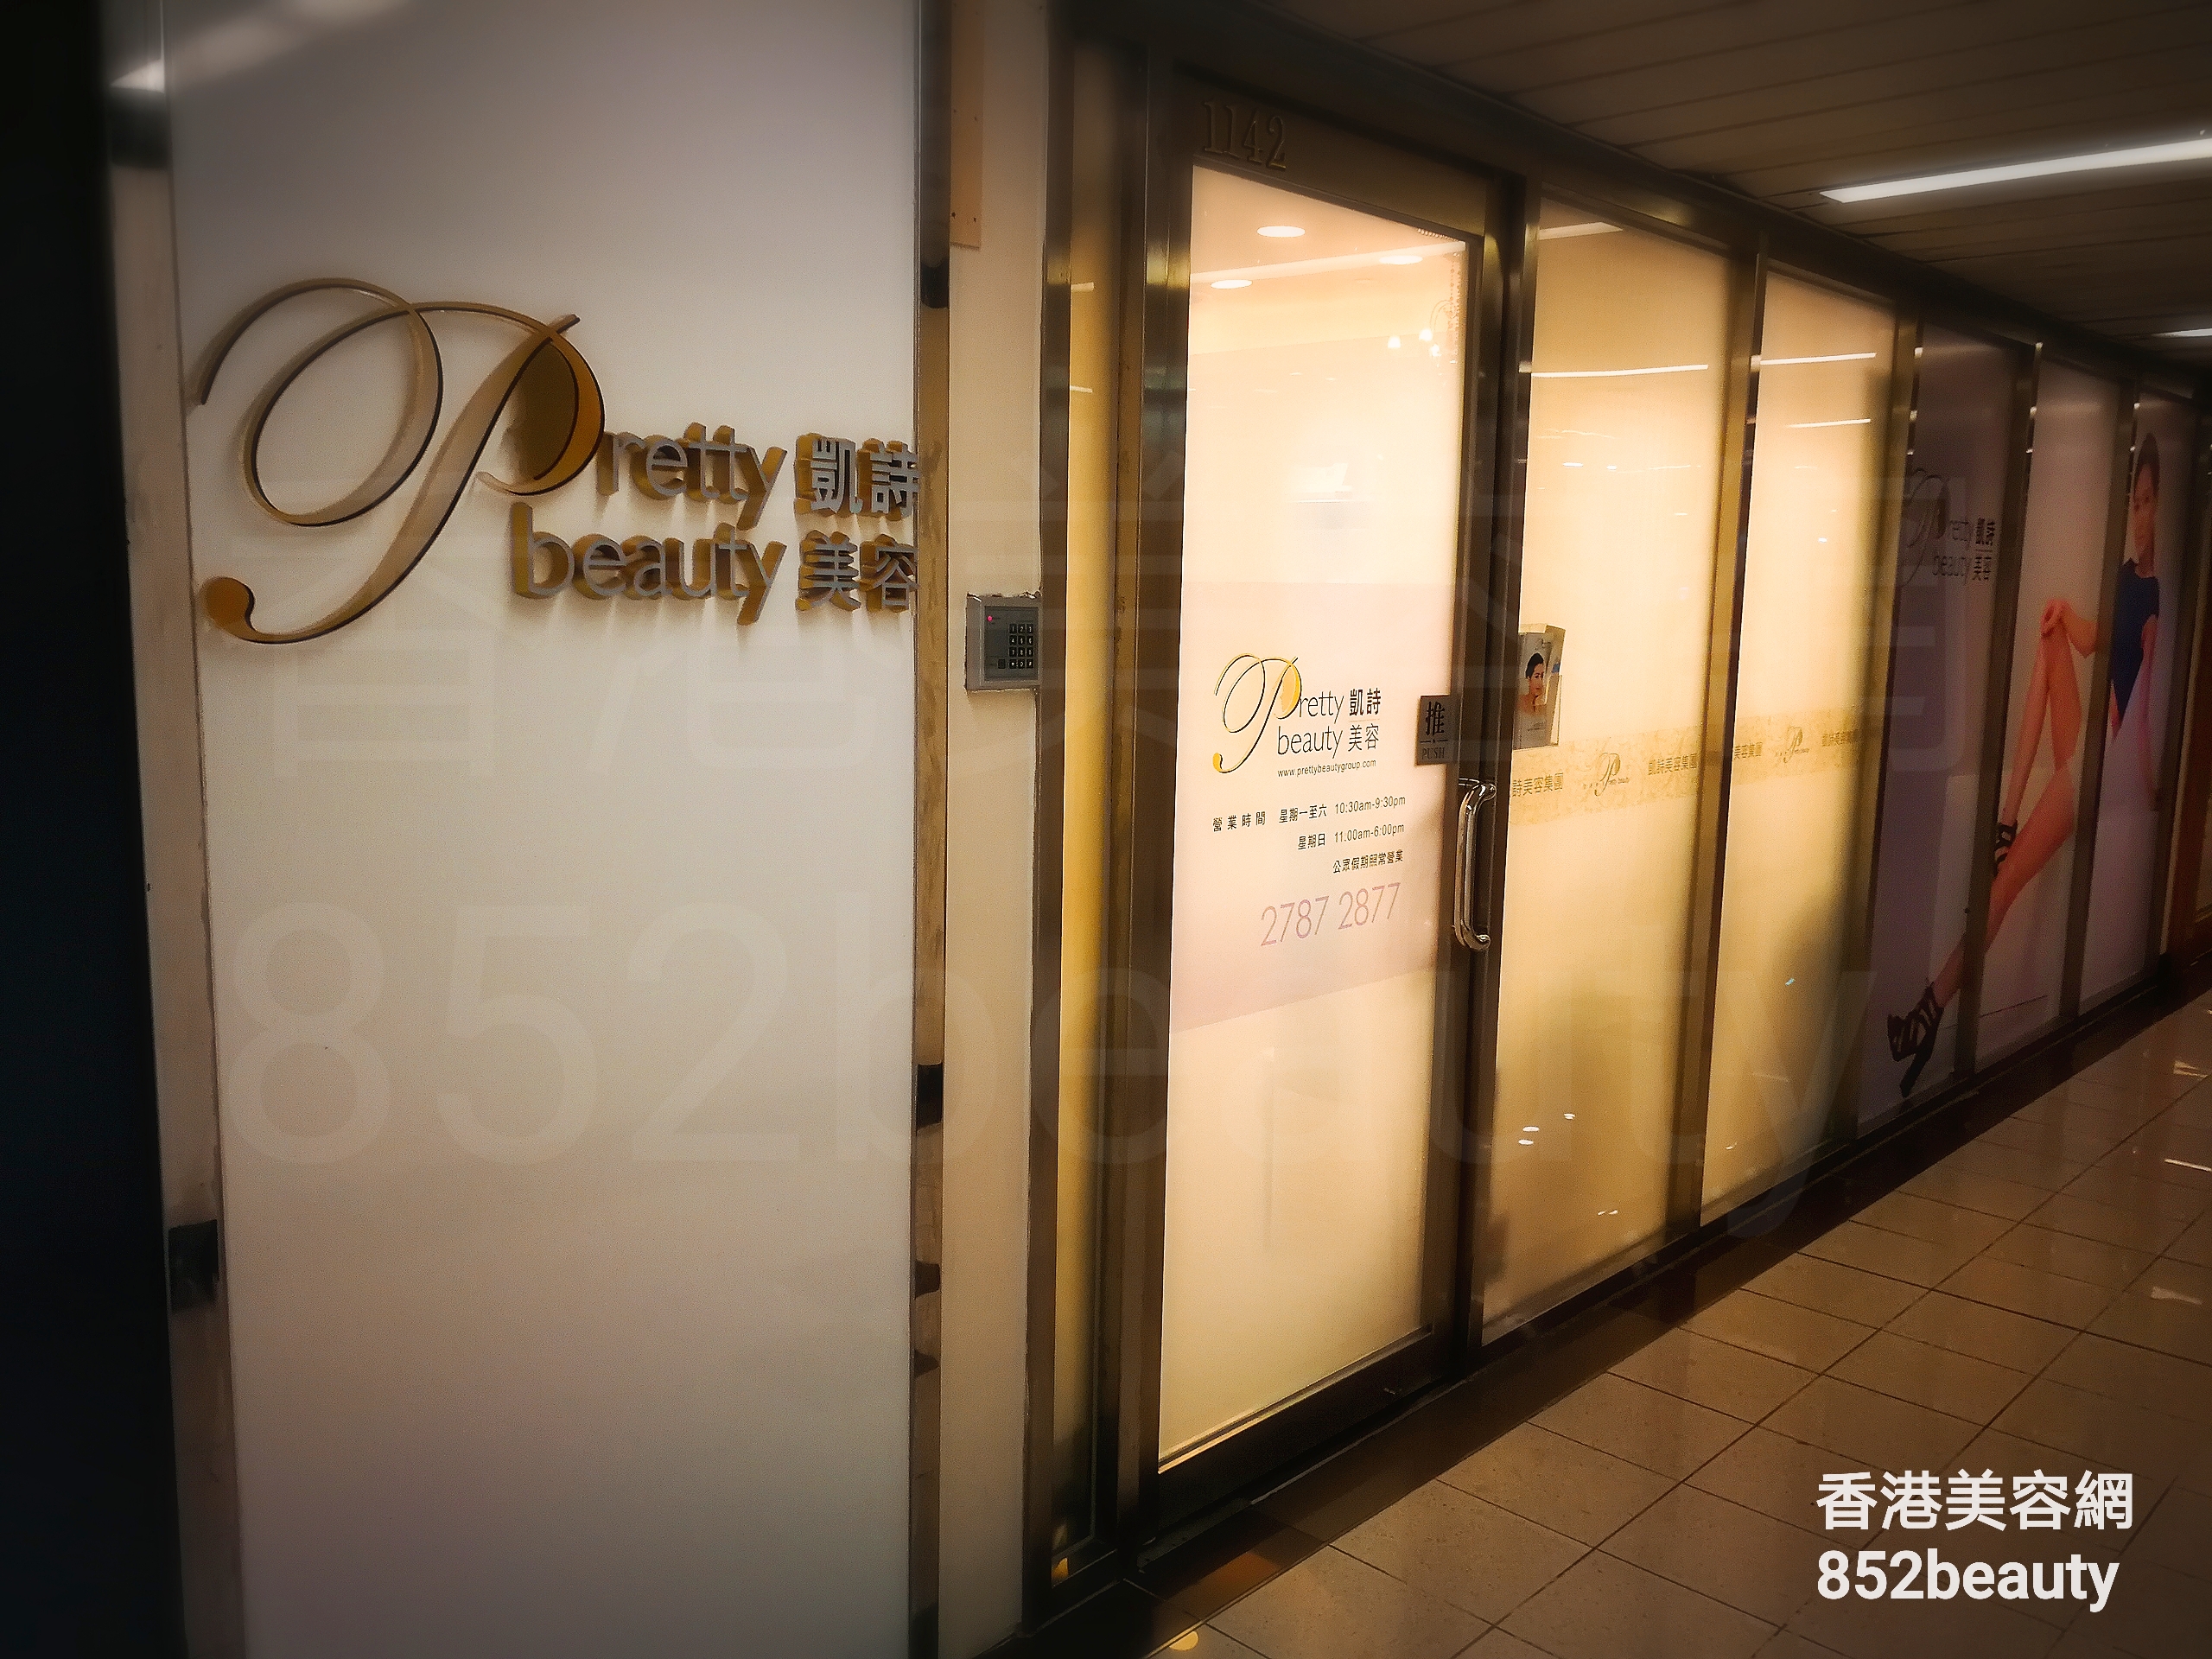 香港美容網 Hong Kong Beauty Salon 美容院 / 美容師: Pretty beauty 凱詩美容 (荃灣店)